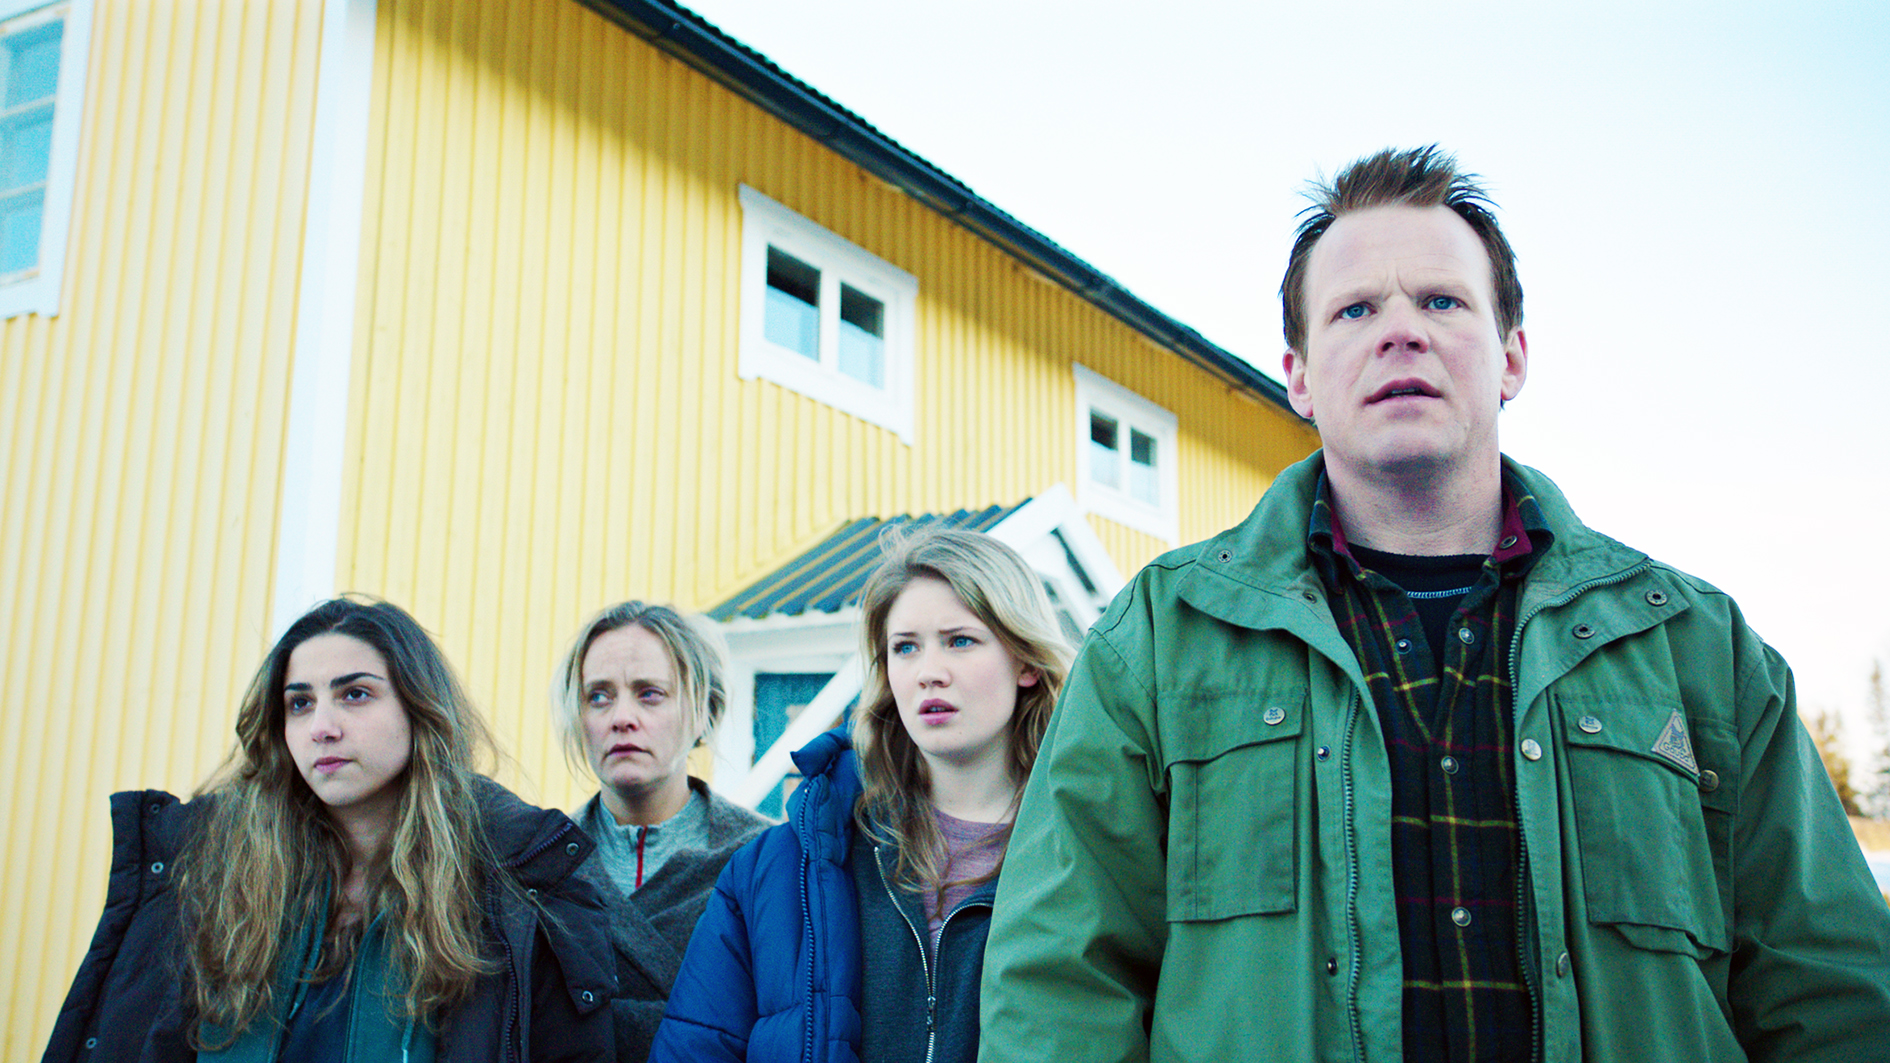 Filmstill aus "Welcome to Norway": Ein Mann und drei Frauen unterschiedlichen Alters in Winterjacken. Hinter ihnen ein gelbes Holzhaus. Sie schauen entsetzt.